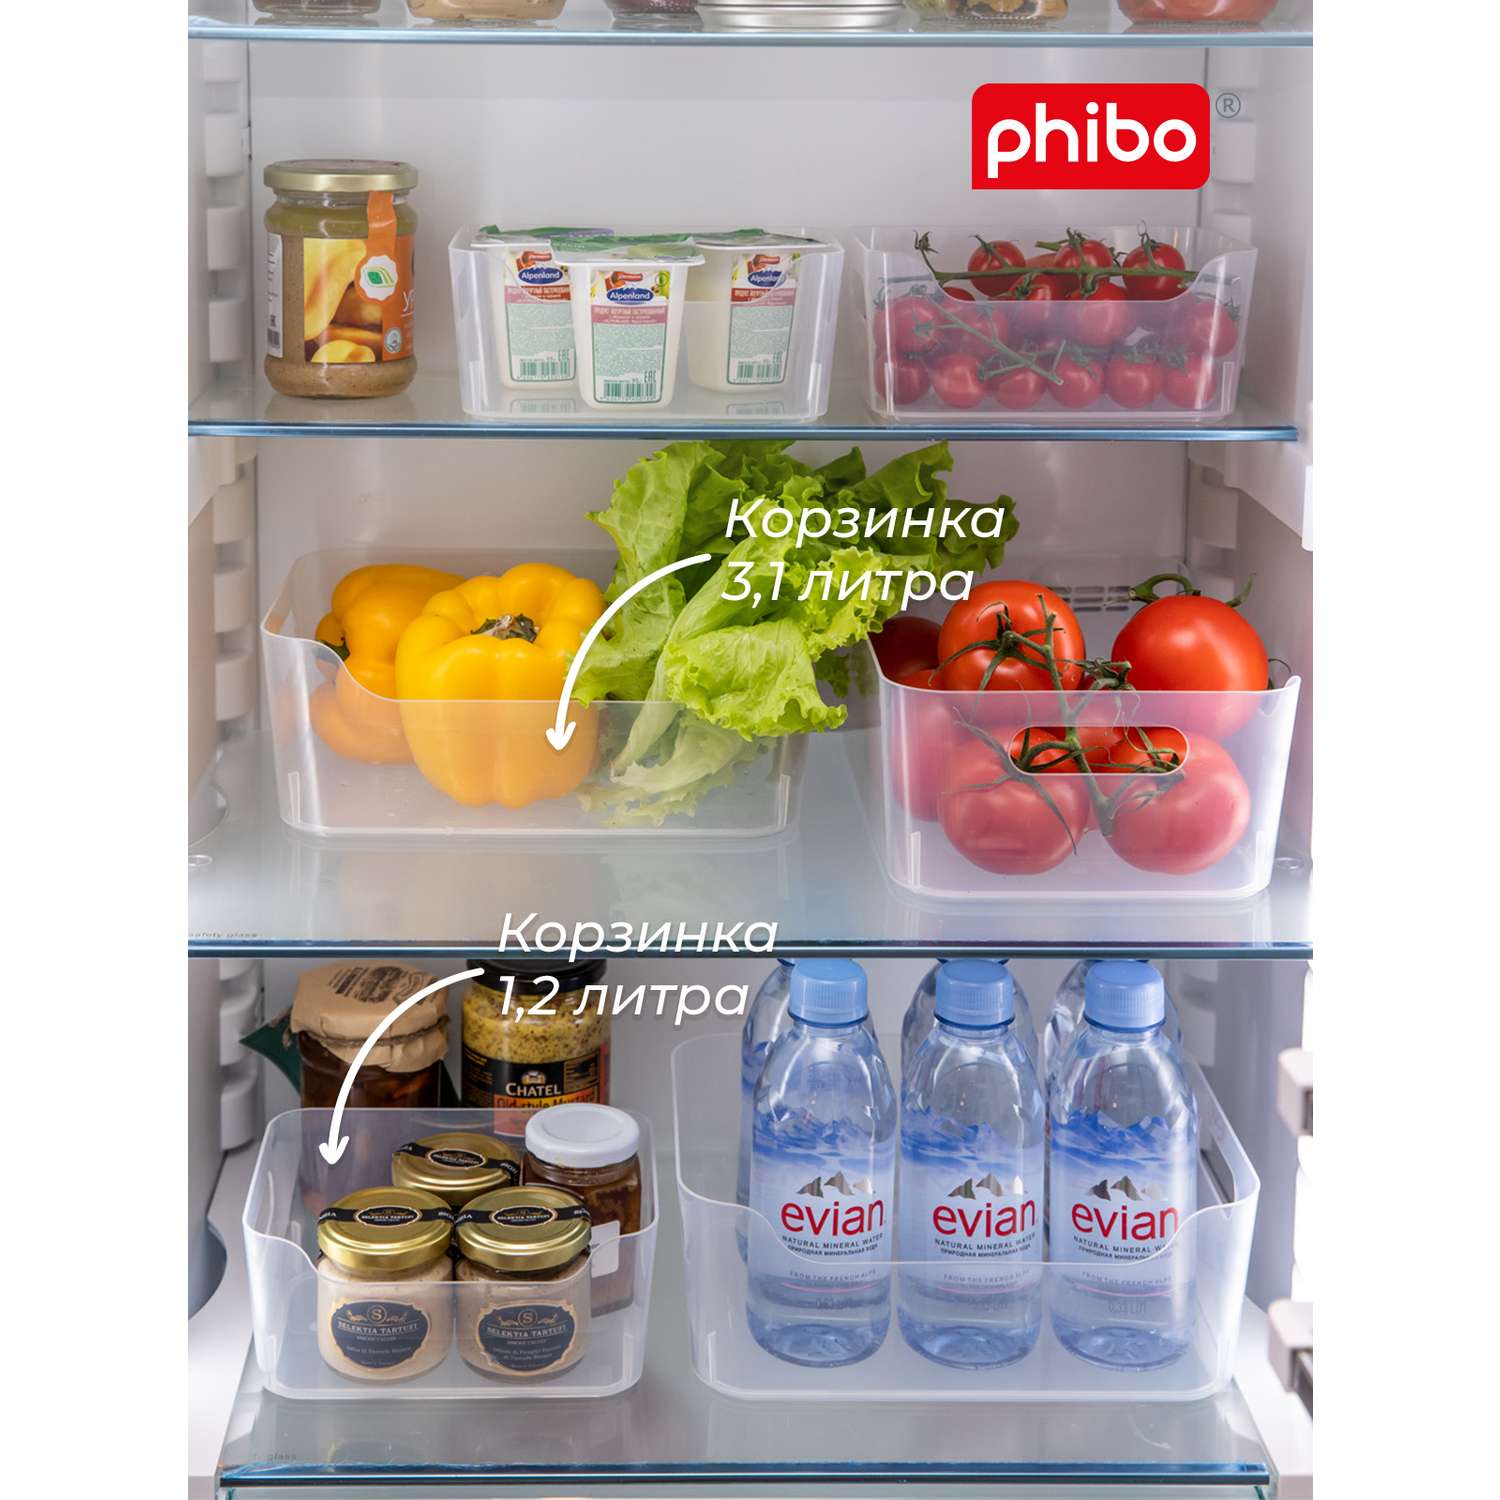 Комплект корзинок Phibo универсальных Scandi 3шт 1.2л+2x3.1л бесцветный - фото 2